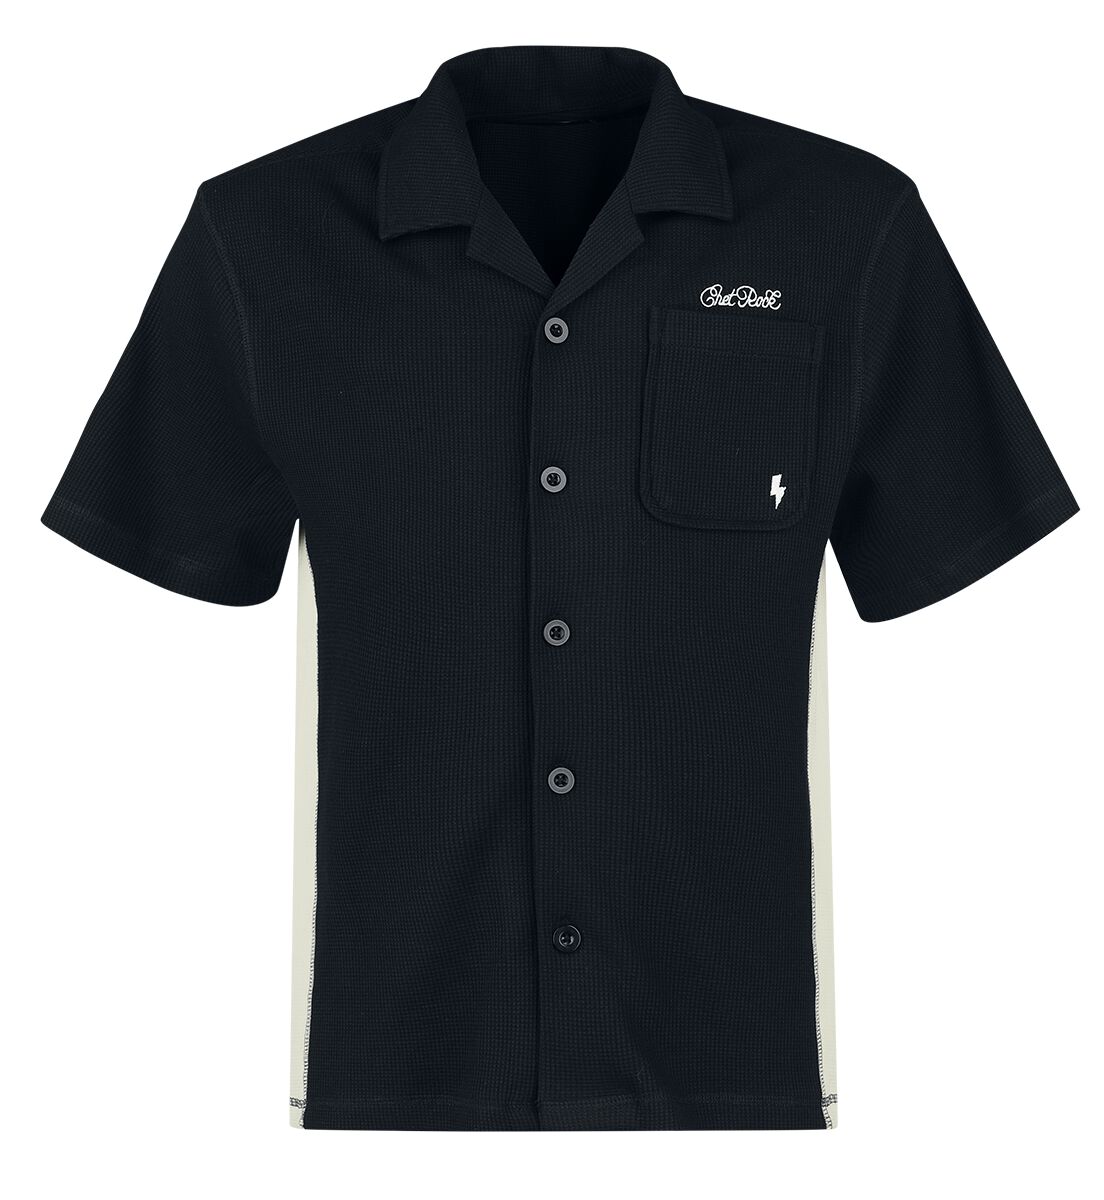 Chet Rock - Rockabilly Kurzarmhemd - Sienna Shirt - S bis XXL - für Männer - Größe XL - schwarz/weiß von Chet Rock